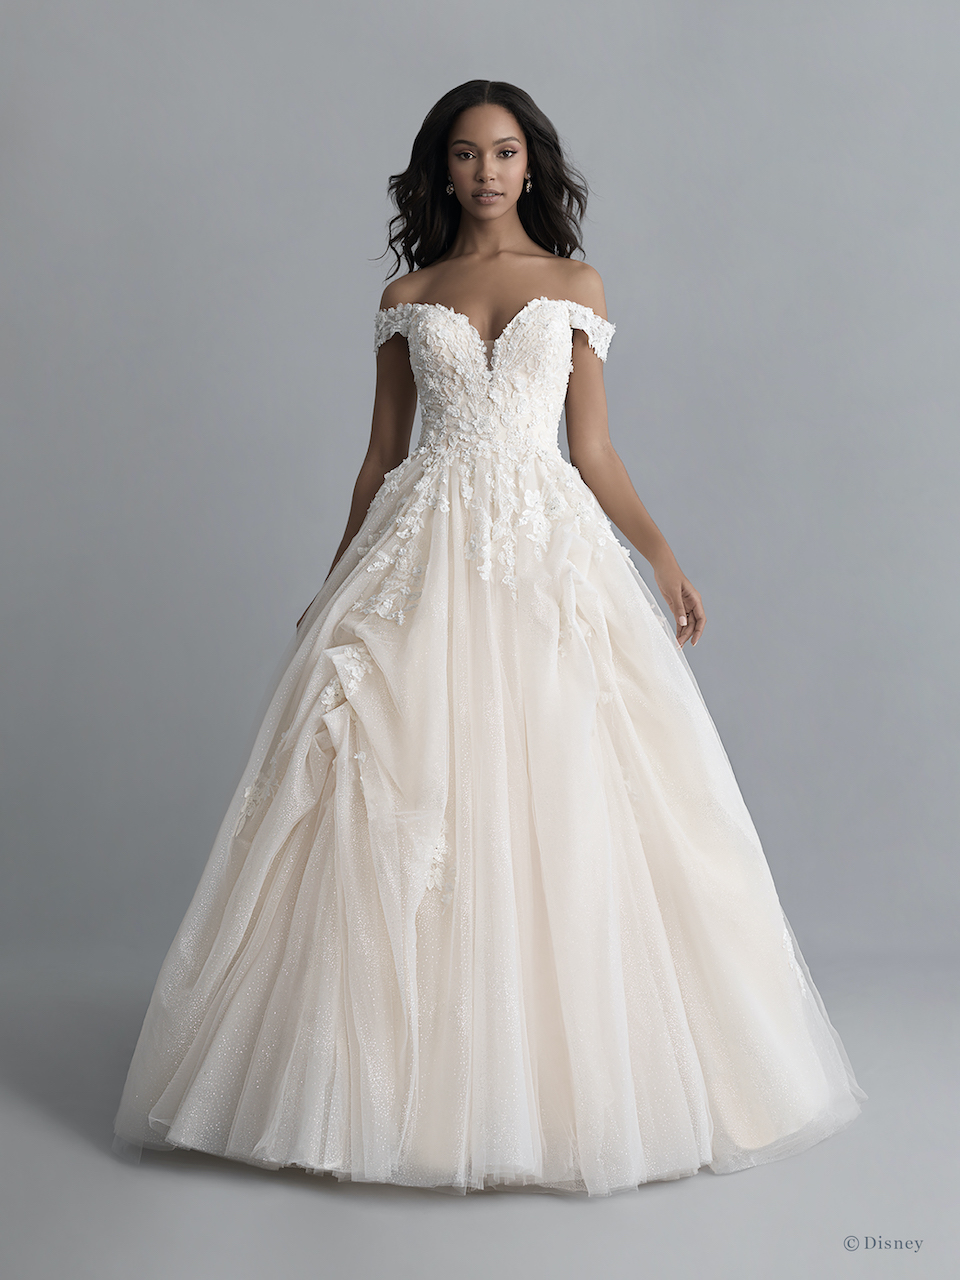 belle inspired wedding dress